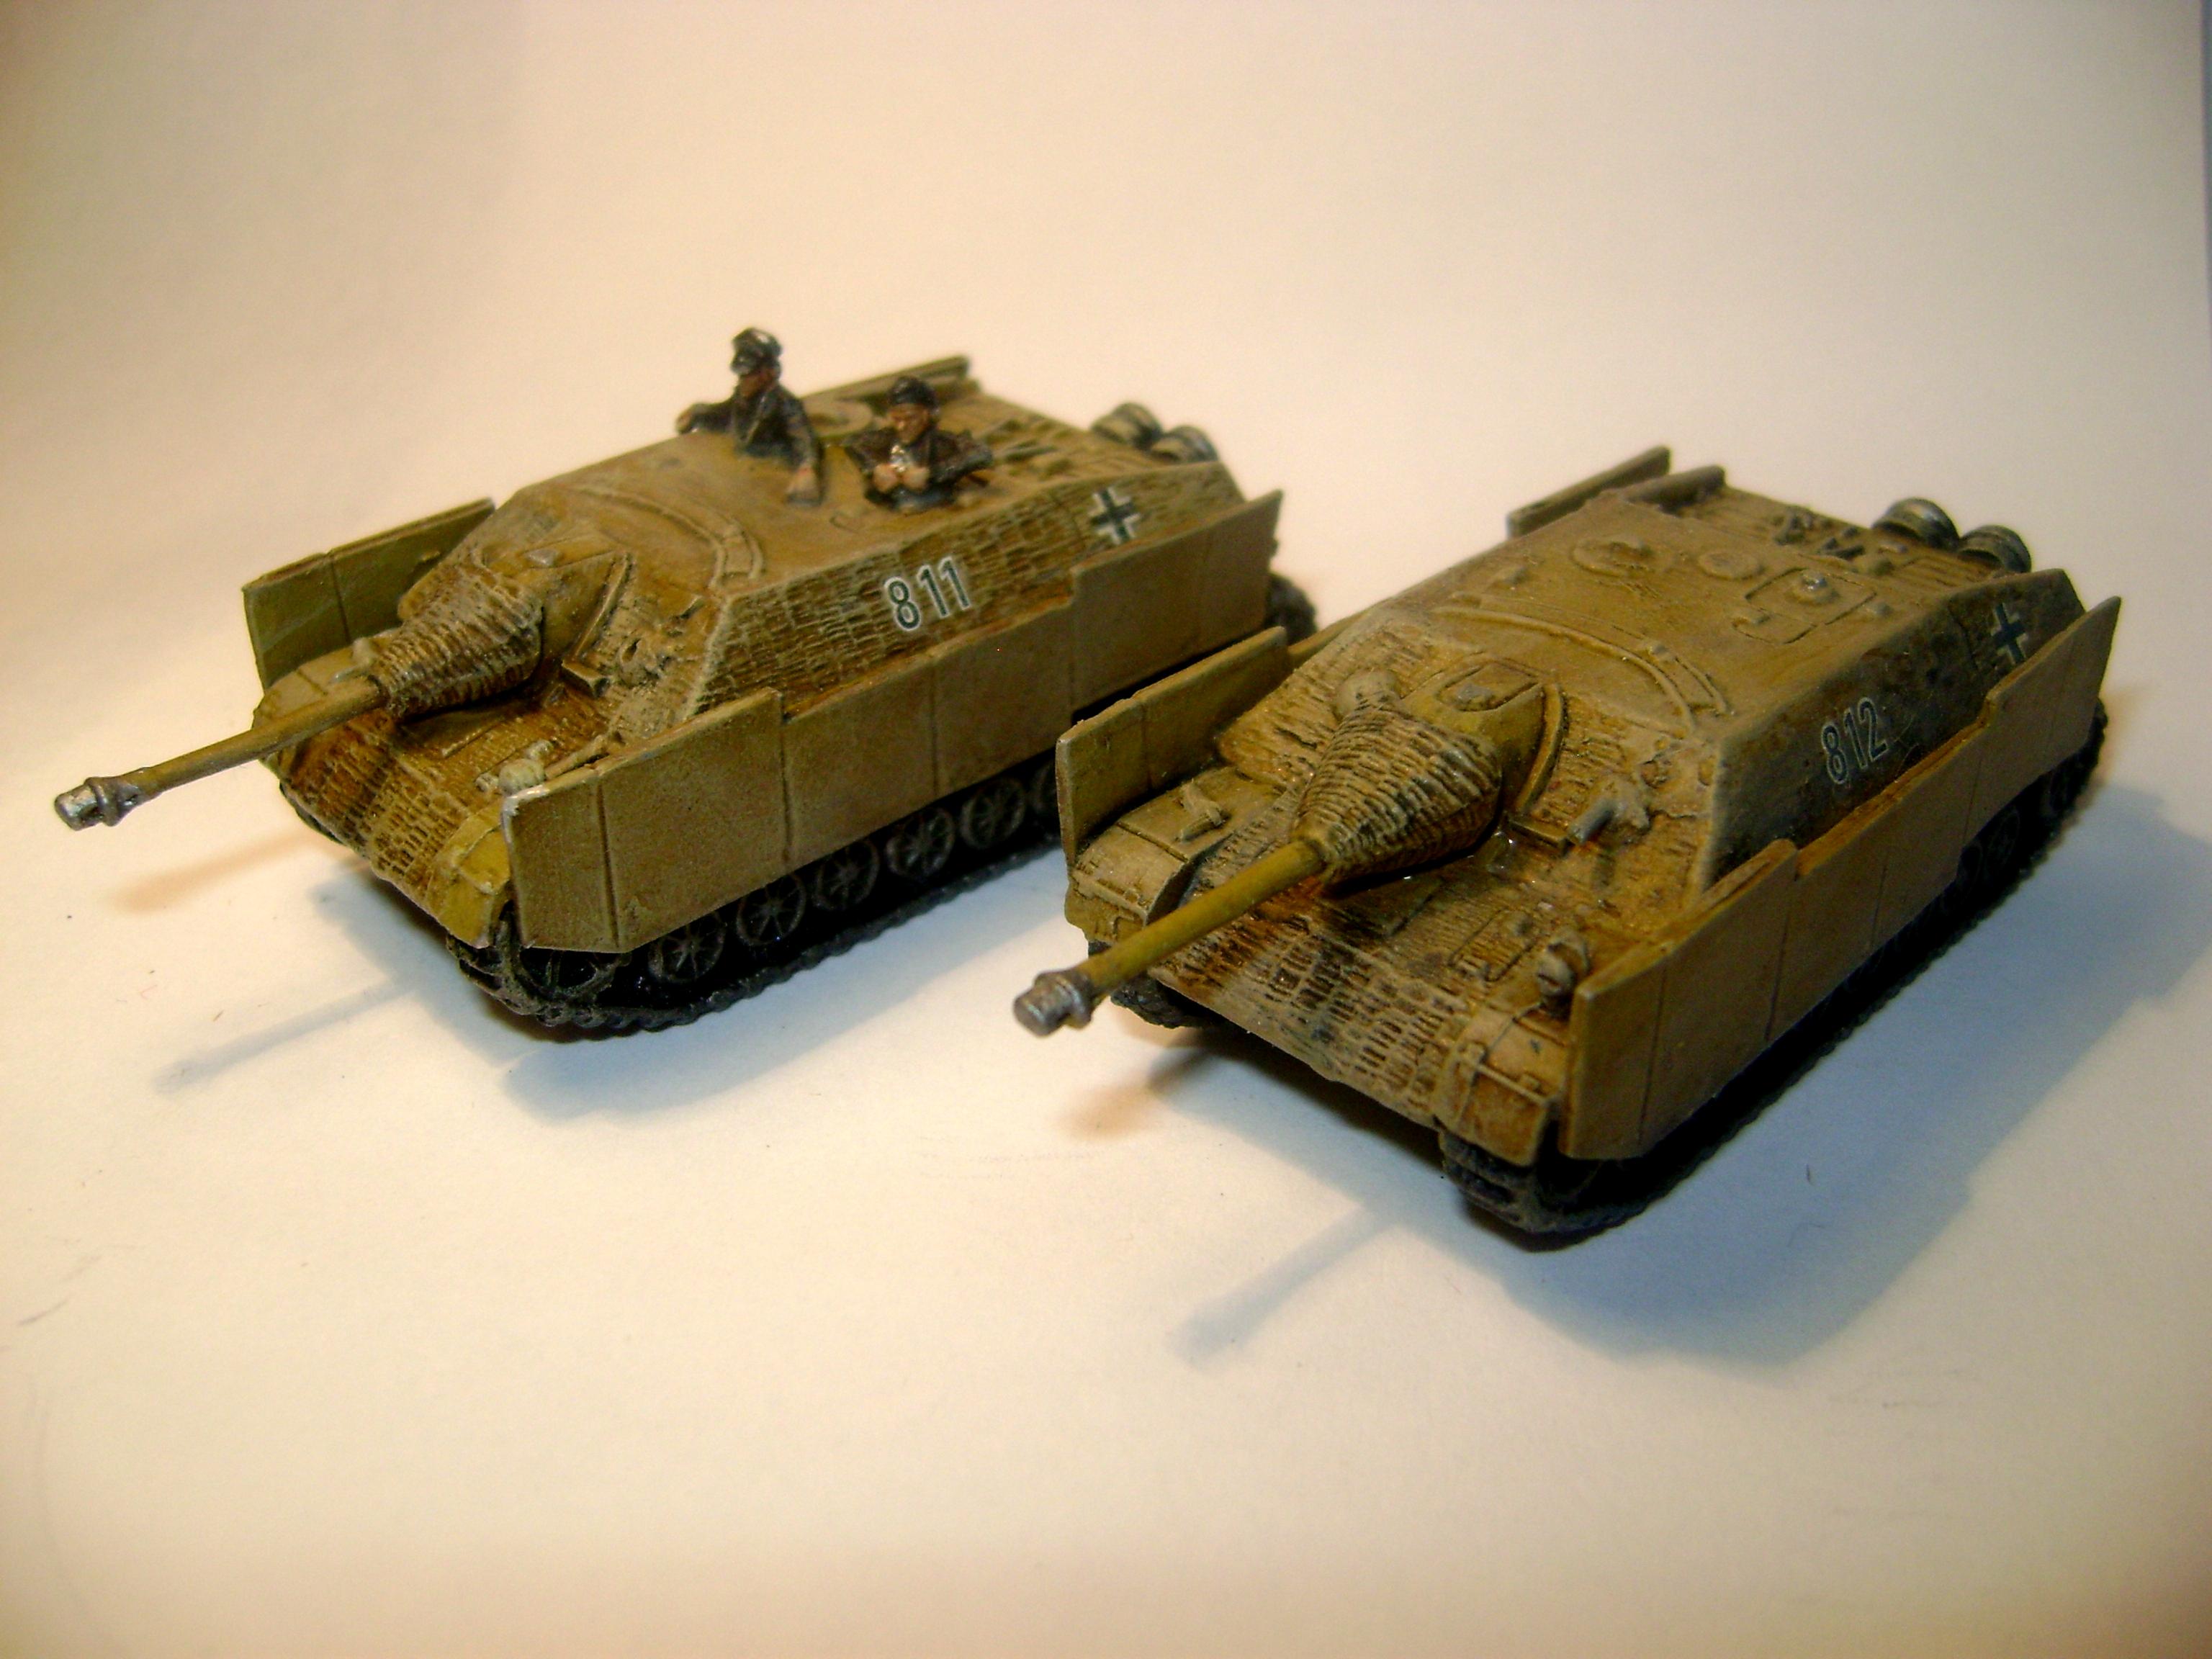 My Jagdpanzer IVs